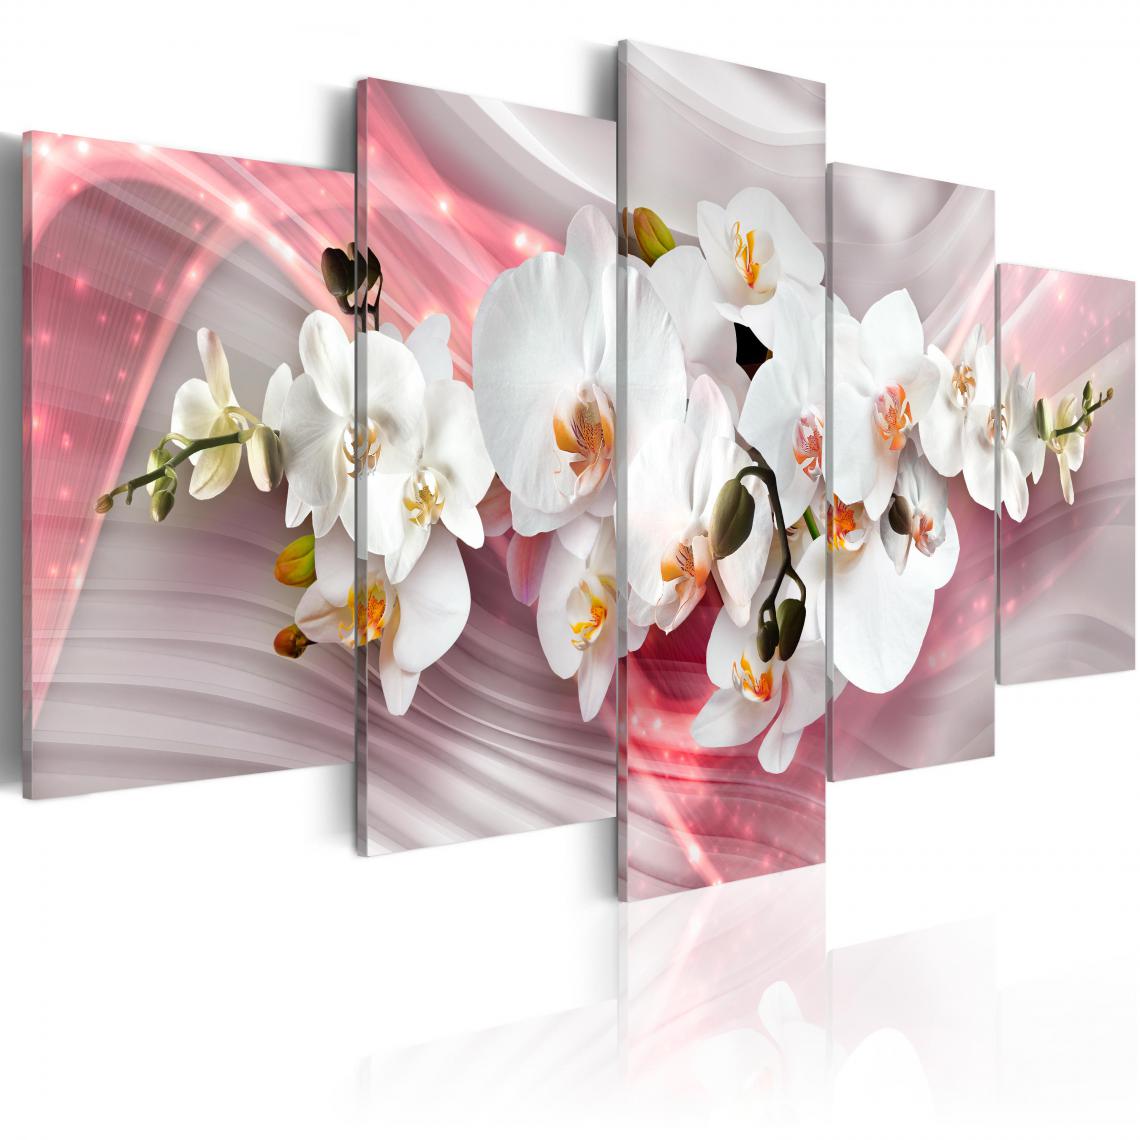 Decoshop26 - Tableau sur toile en 5 panneaux décoration murale image imprimée cadre en bois à suspendre Lueur rose 100x50 cm 11_0005663 - Tableaux, peintures